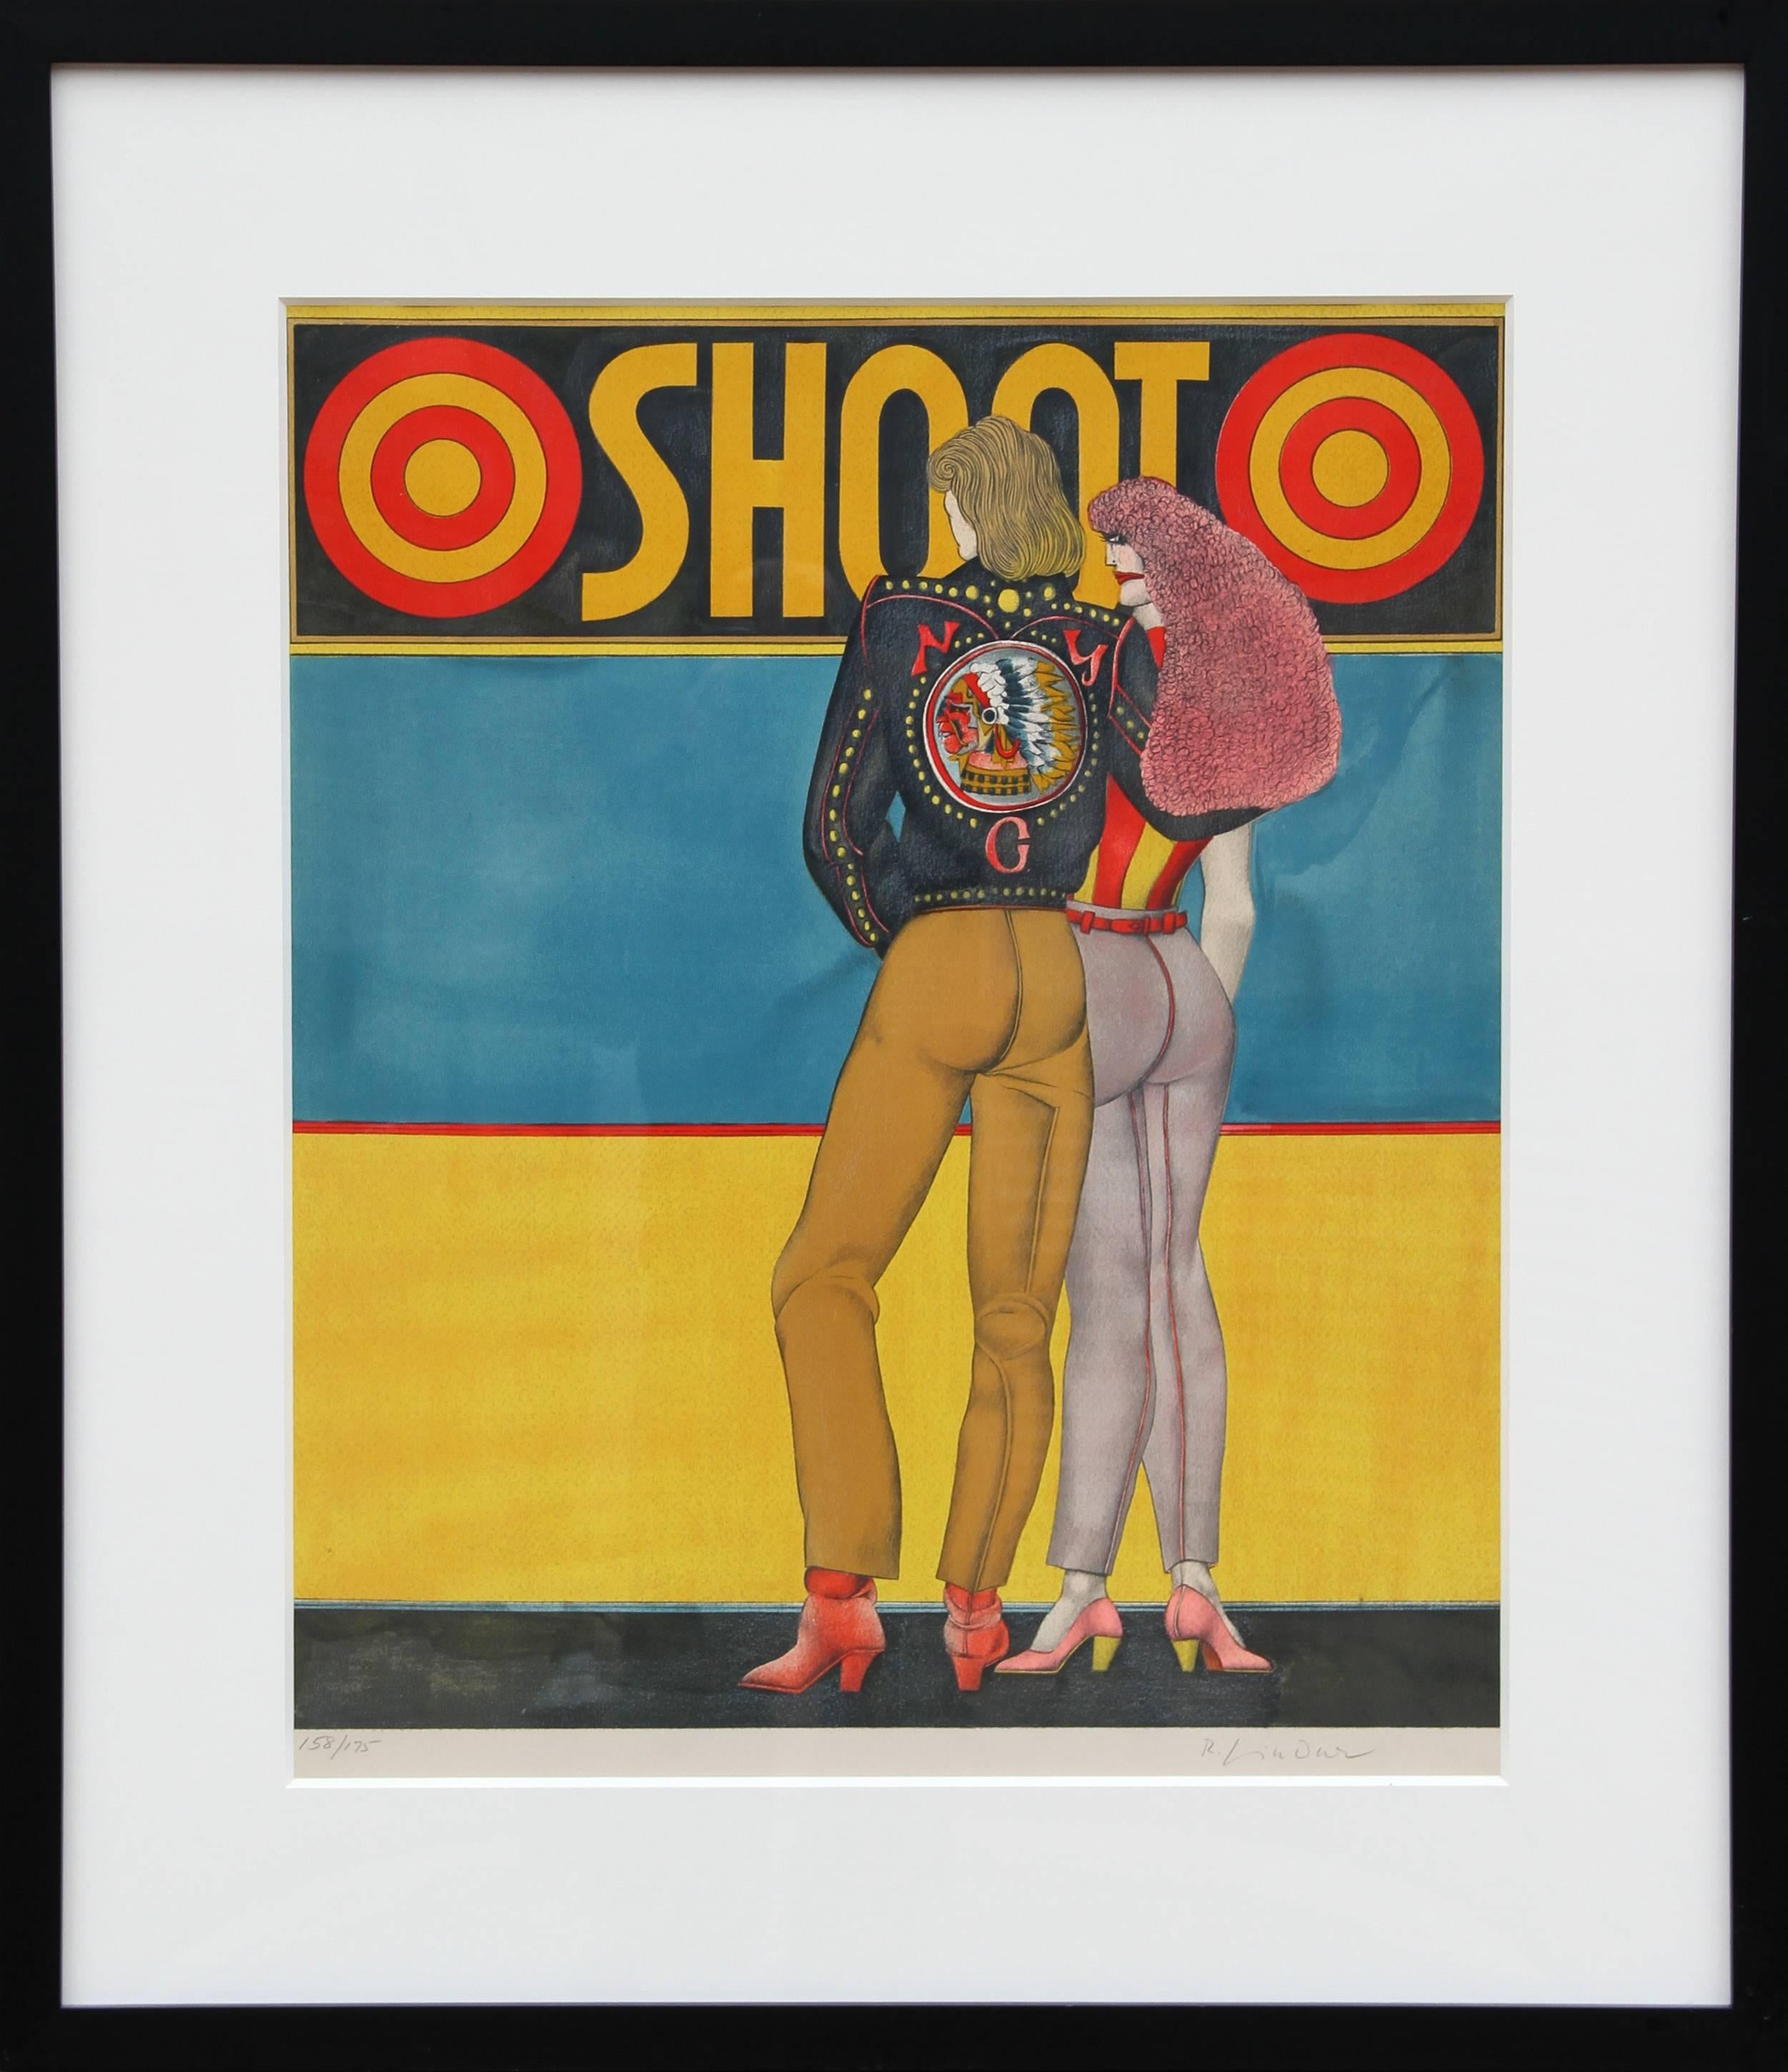 Shoot, Pop Art Lithograph by Richard Lindner 1969